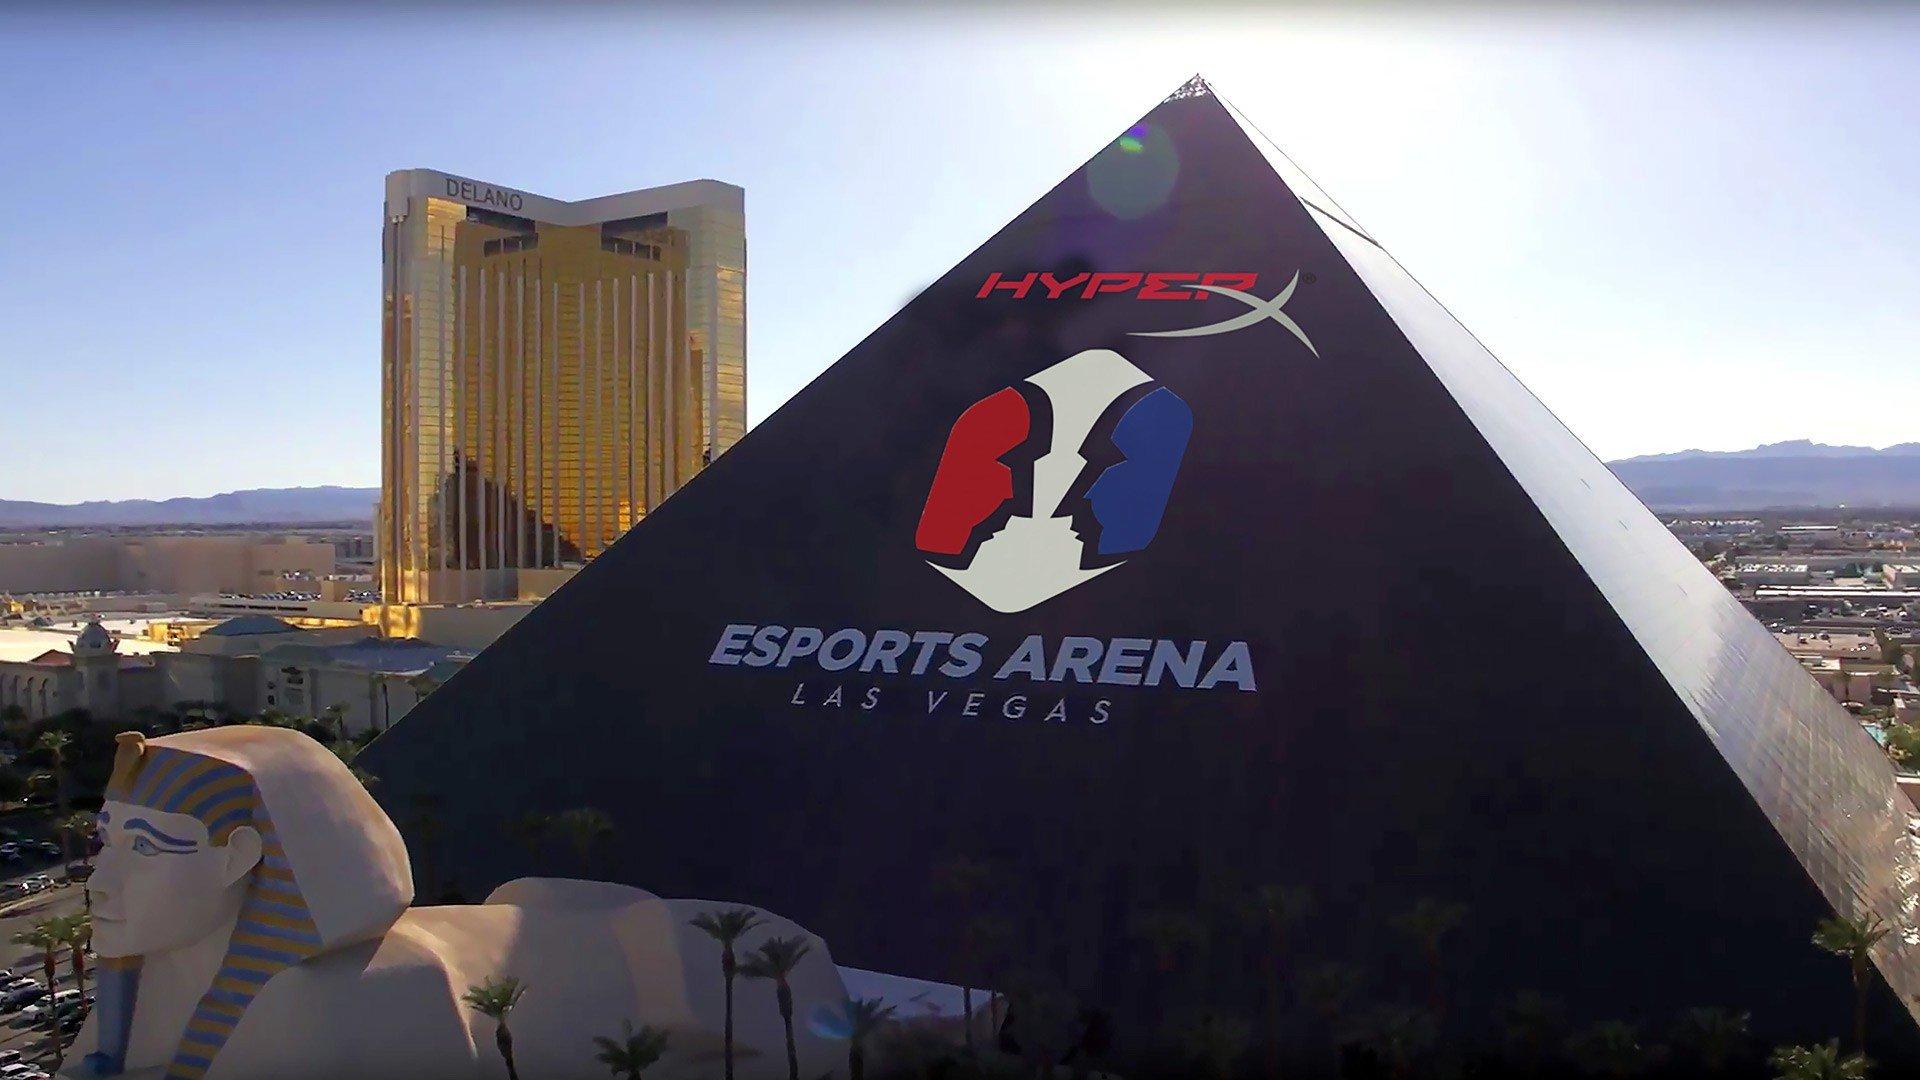 Hyperx Esports Arena Las Vegas